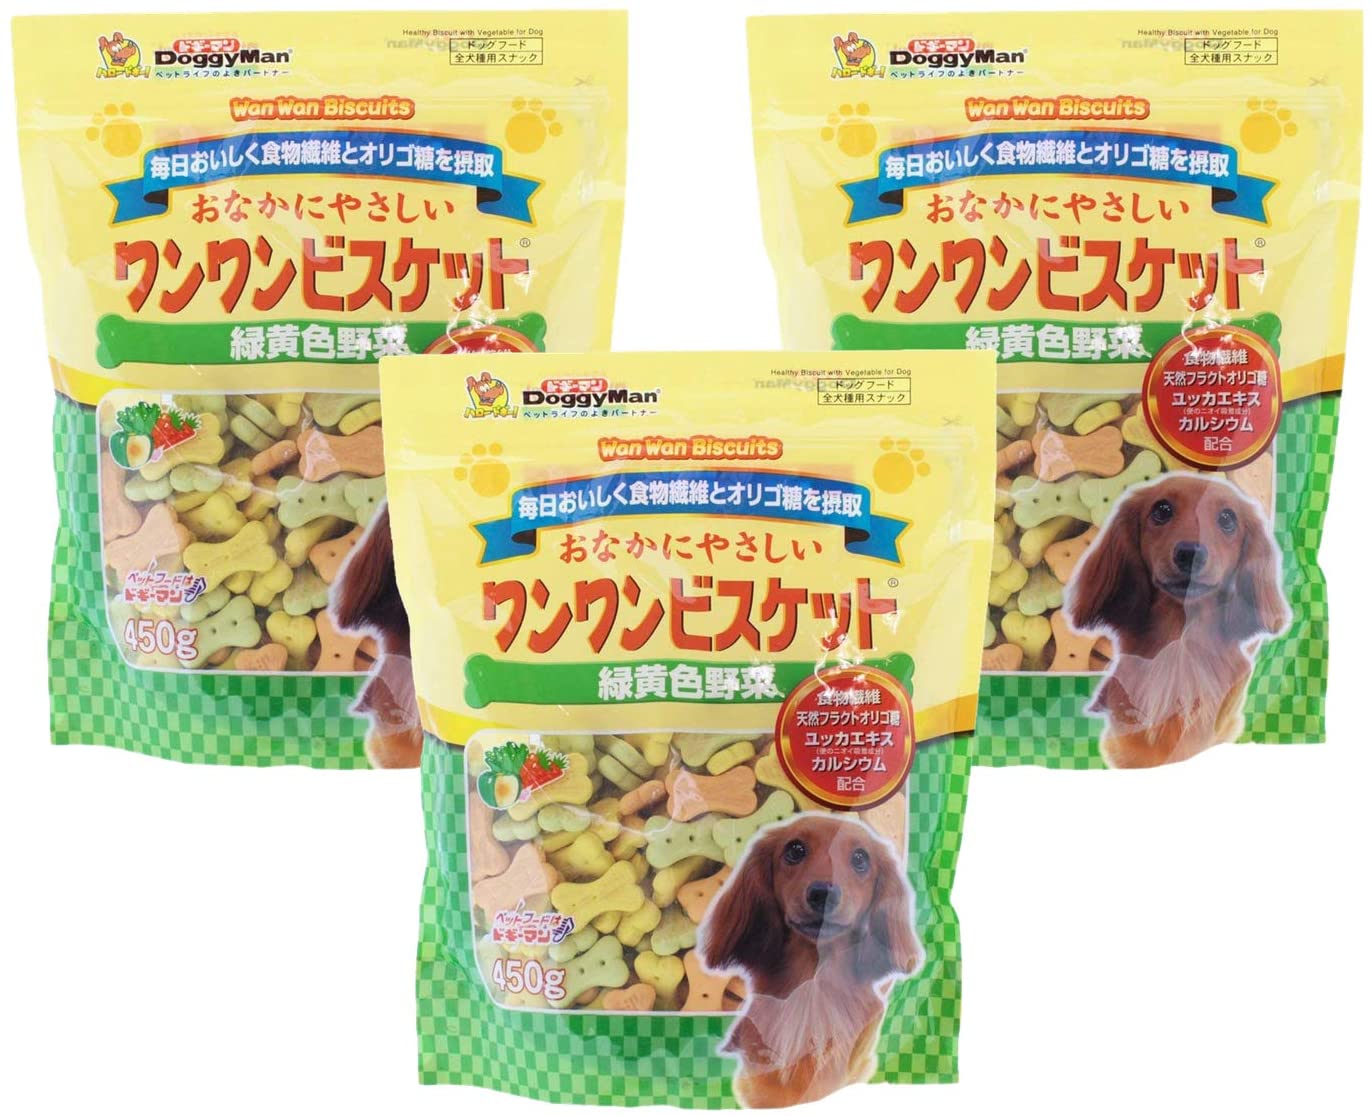 卸売 【3袋セット】 ドギーマン 犬用おやつ おなかにやさしいワンワンビスケット 緑黄色野菜 450g キャットフード